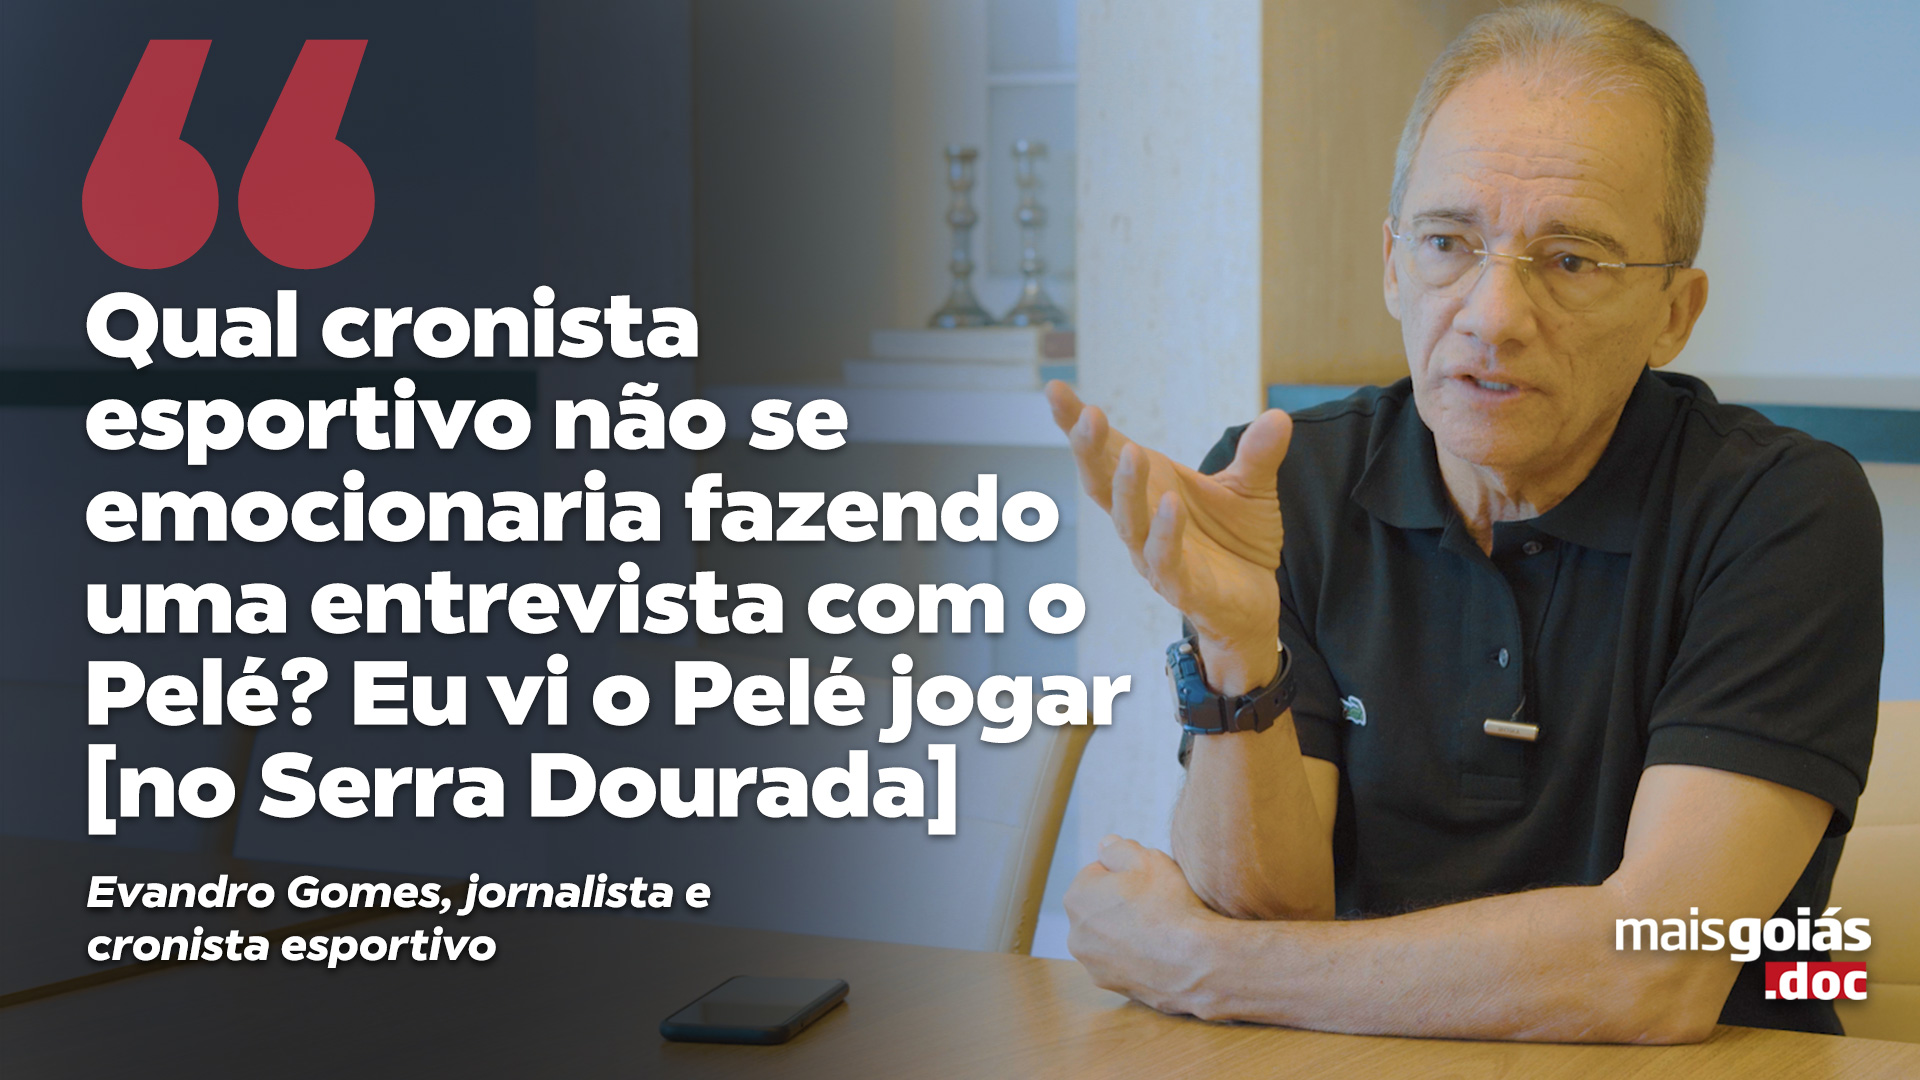 Mais Goiás.doc relembra história do estádio Serra Dourada (Foto: Artur Dias | Arte: Niame Loiola)